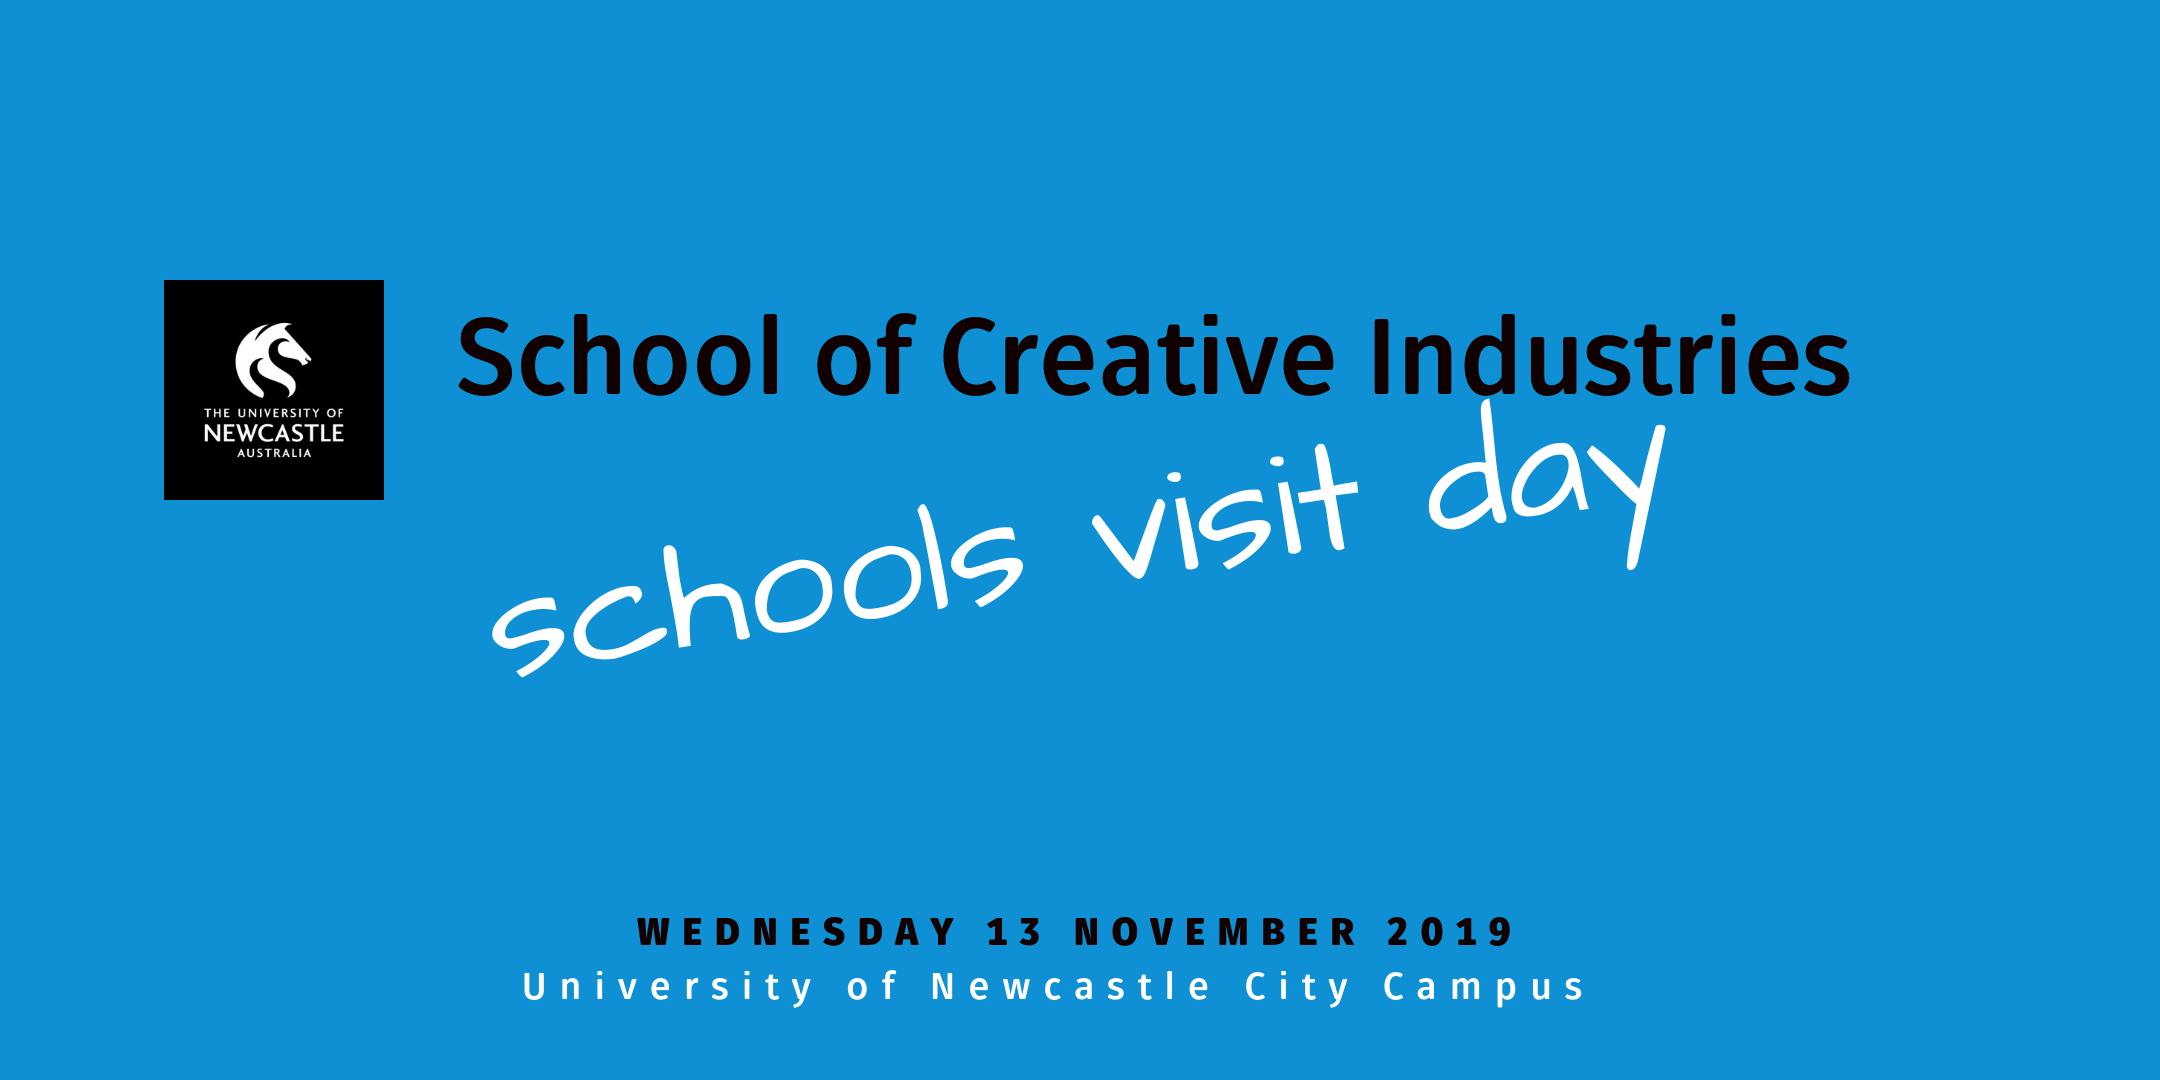 School of Creative Industries Schools Visit Day 